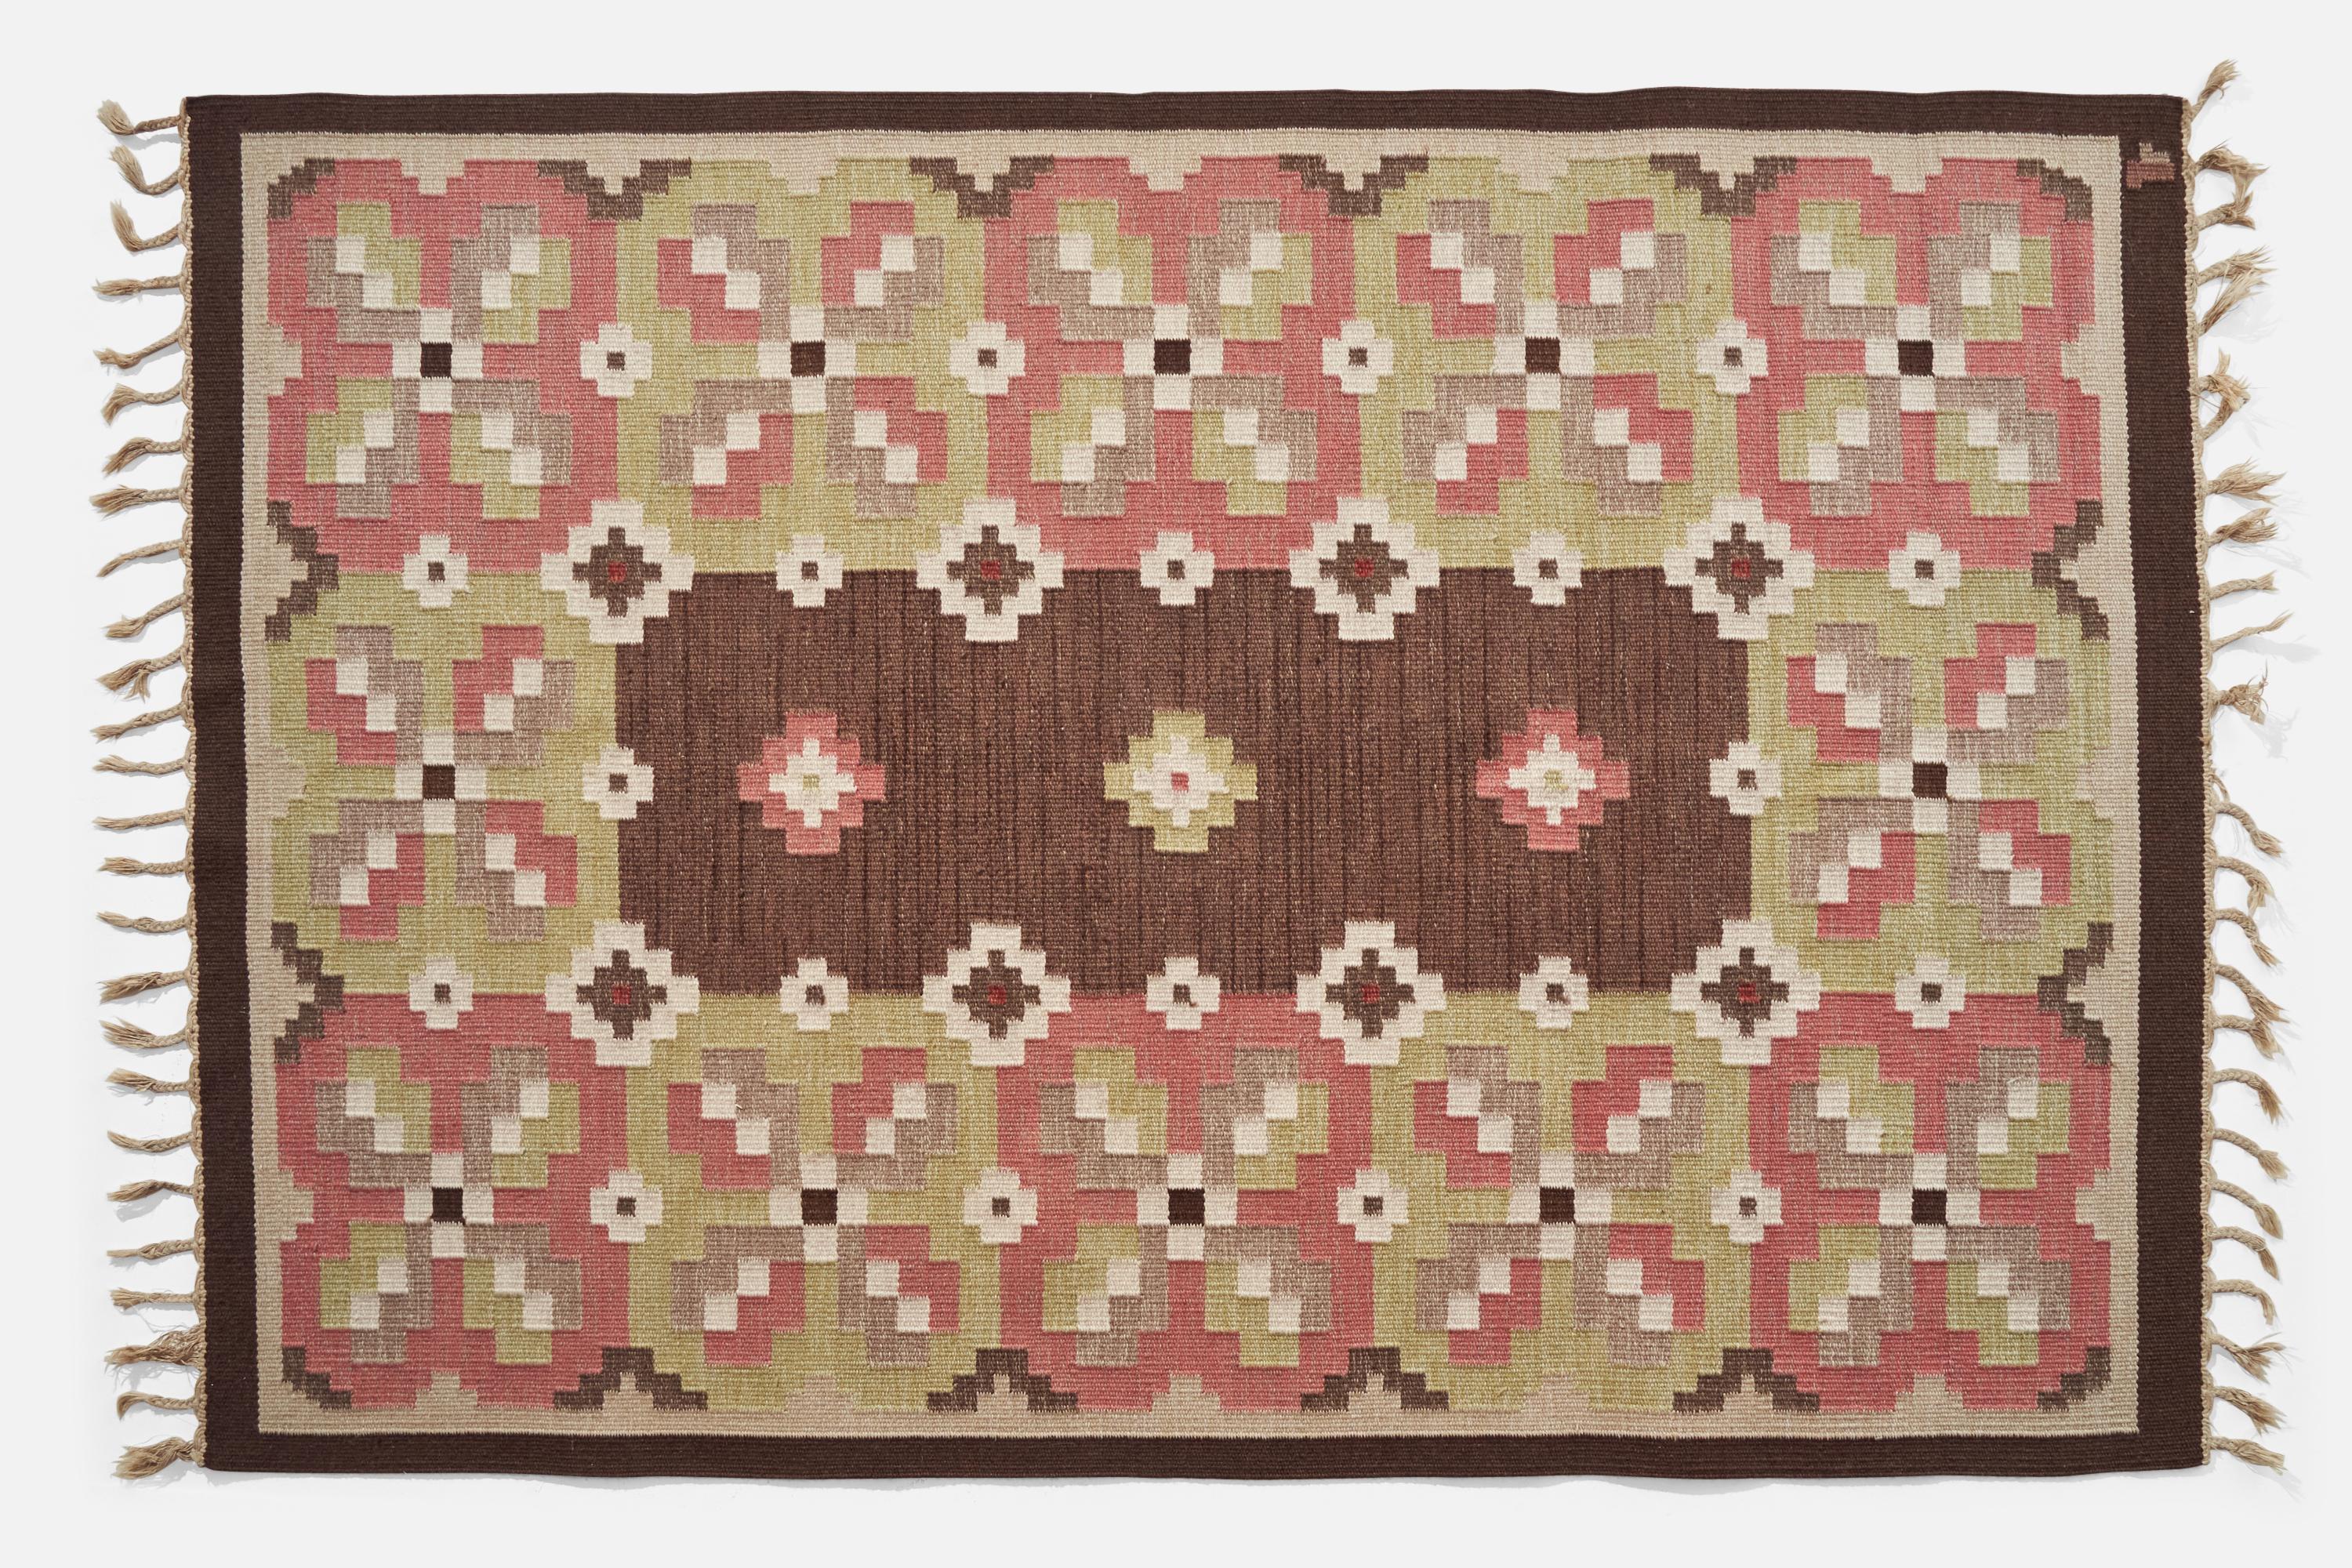 Tapis en laine à tissage plat teint en brun, vert et rose, conçu par Erik Lundberg et produit par Vävaregården, Suède, vers les années 1950.